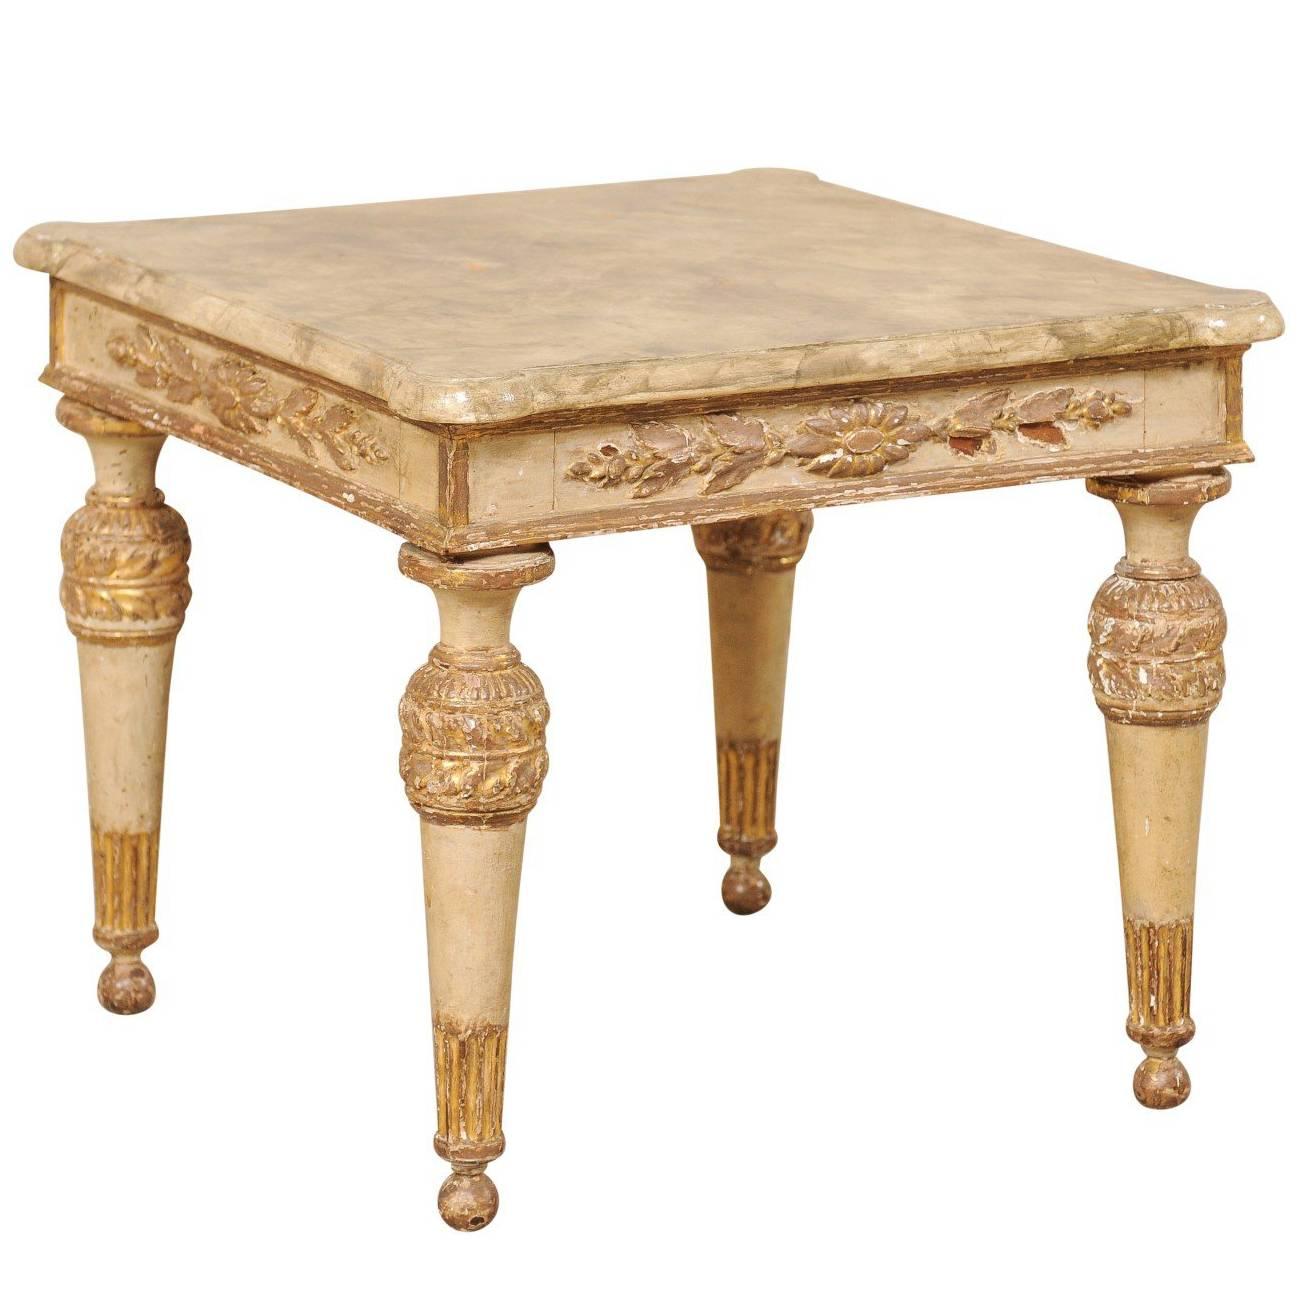 Table d'appoint italienne du 18ème siècle en bois sculpté, doré et peint